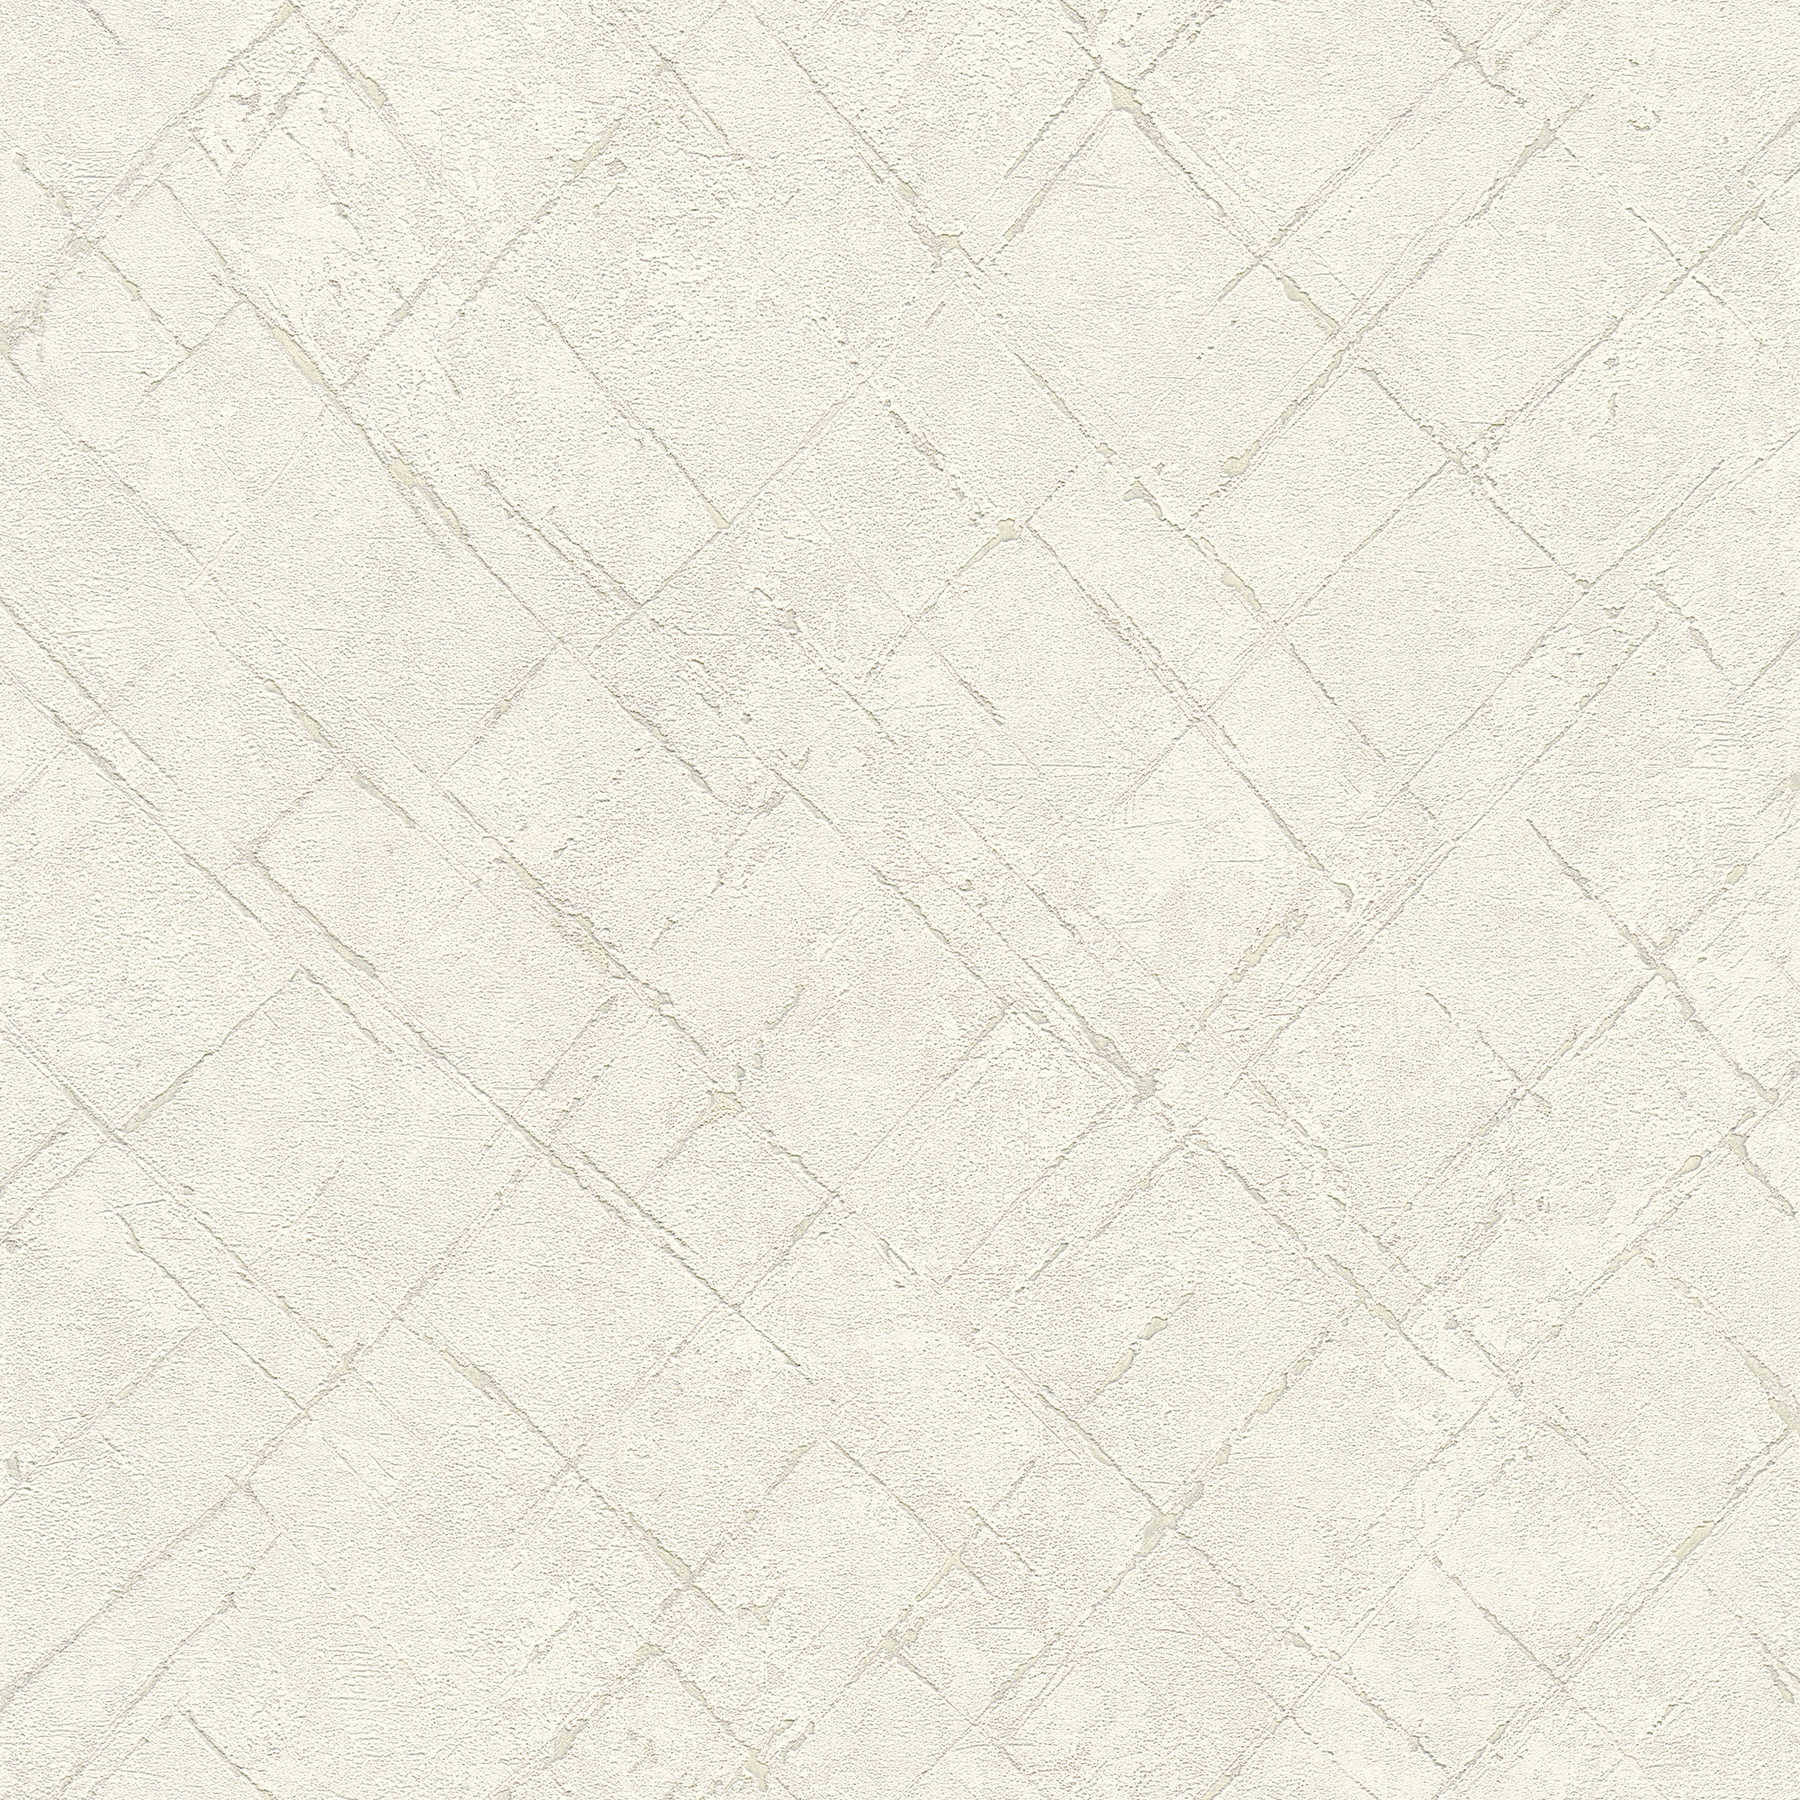 Papier peint intissé aspect plâtre dans le look usé - blanc, gris
